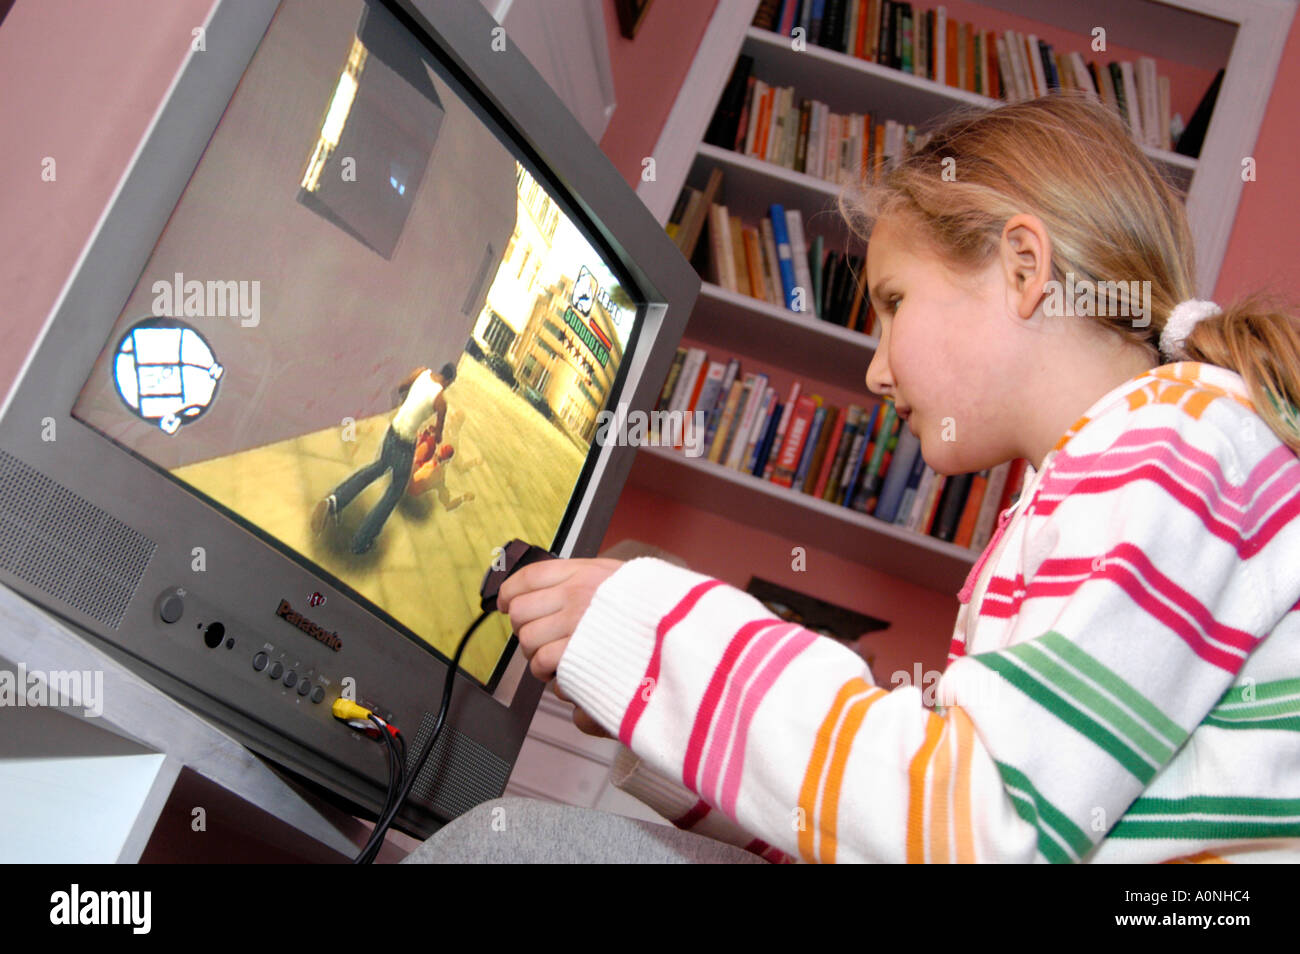 Jeune fille jouant du certificat 18 violents rated ordinateur jeu Grand Theft Auto sur console Playstation de Sony, England, UK Banque D'Images